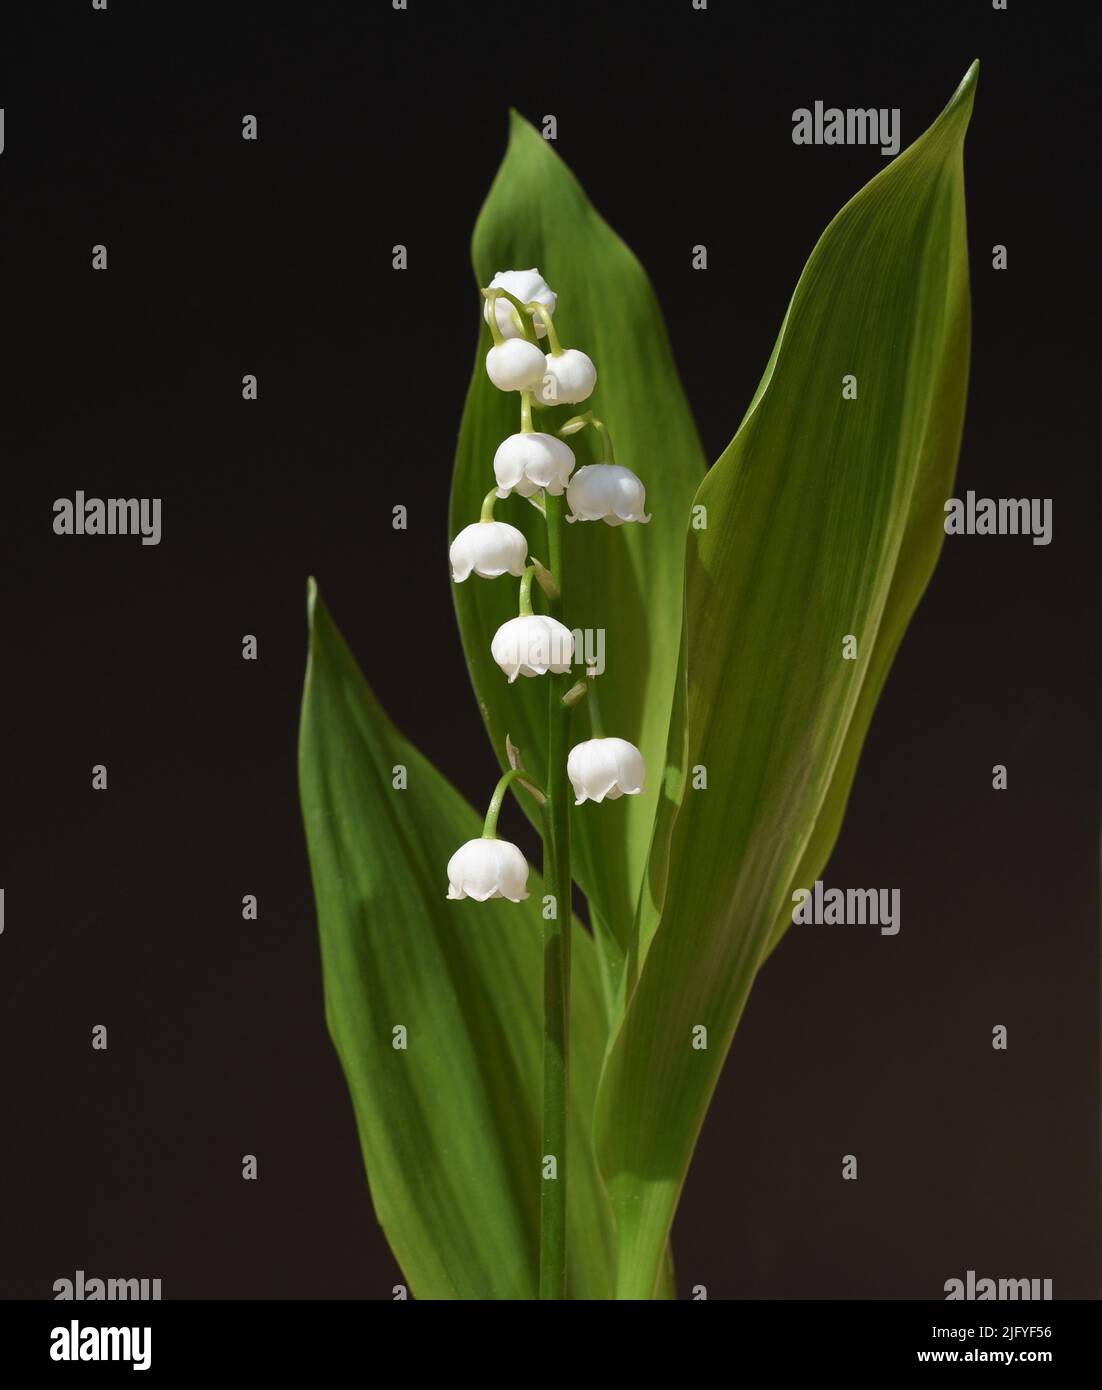 Maigloeckchen, Convallaria majalis hat weisse, Blueten. Sie ist eine Duft- und Giftpflanze und eine wichtige Heilpflanze, Lily-of-the-valley, Convalla Stock Photo